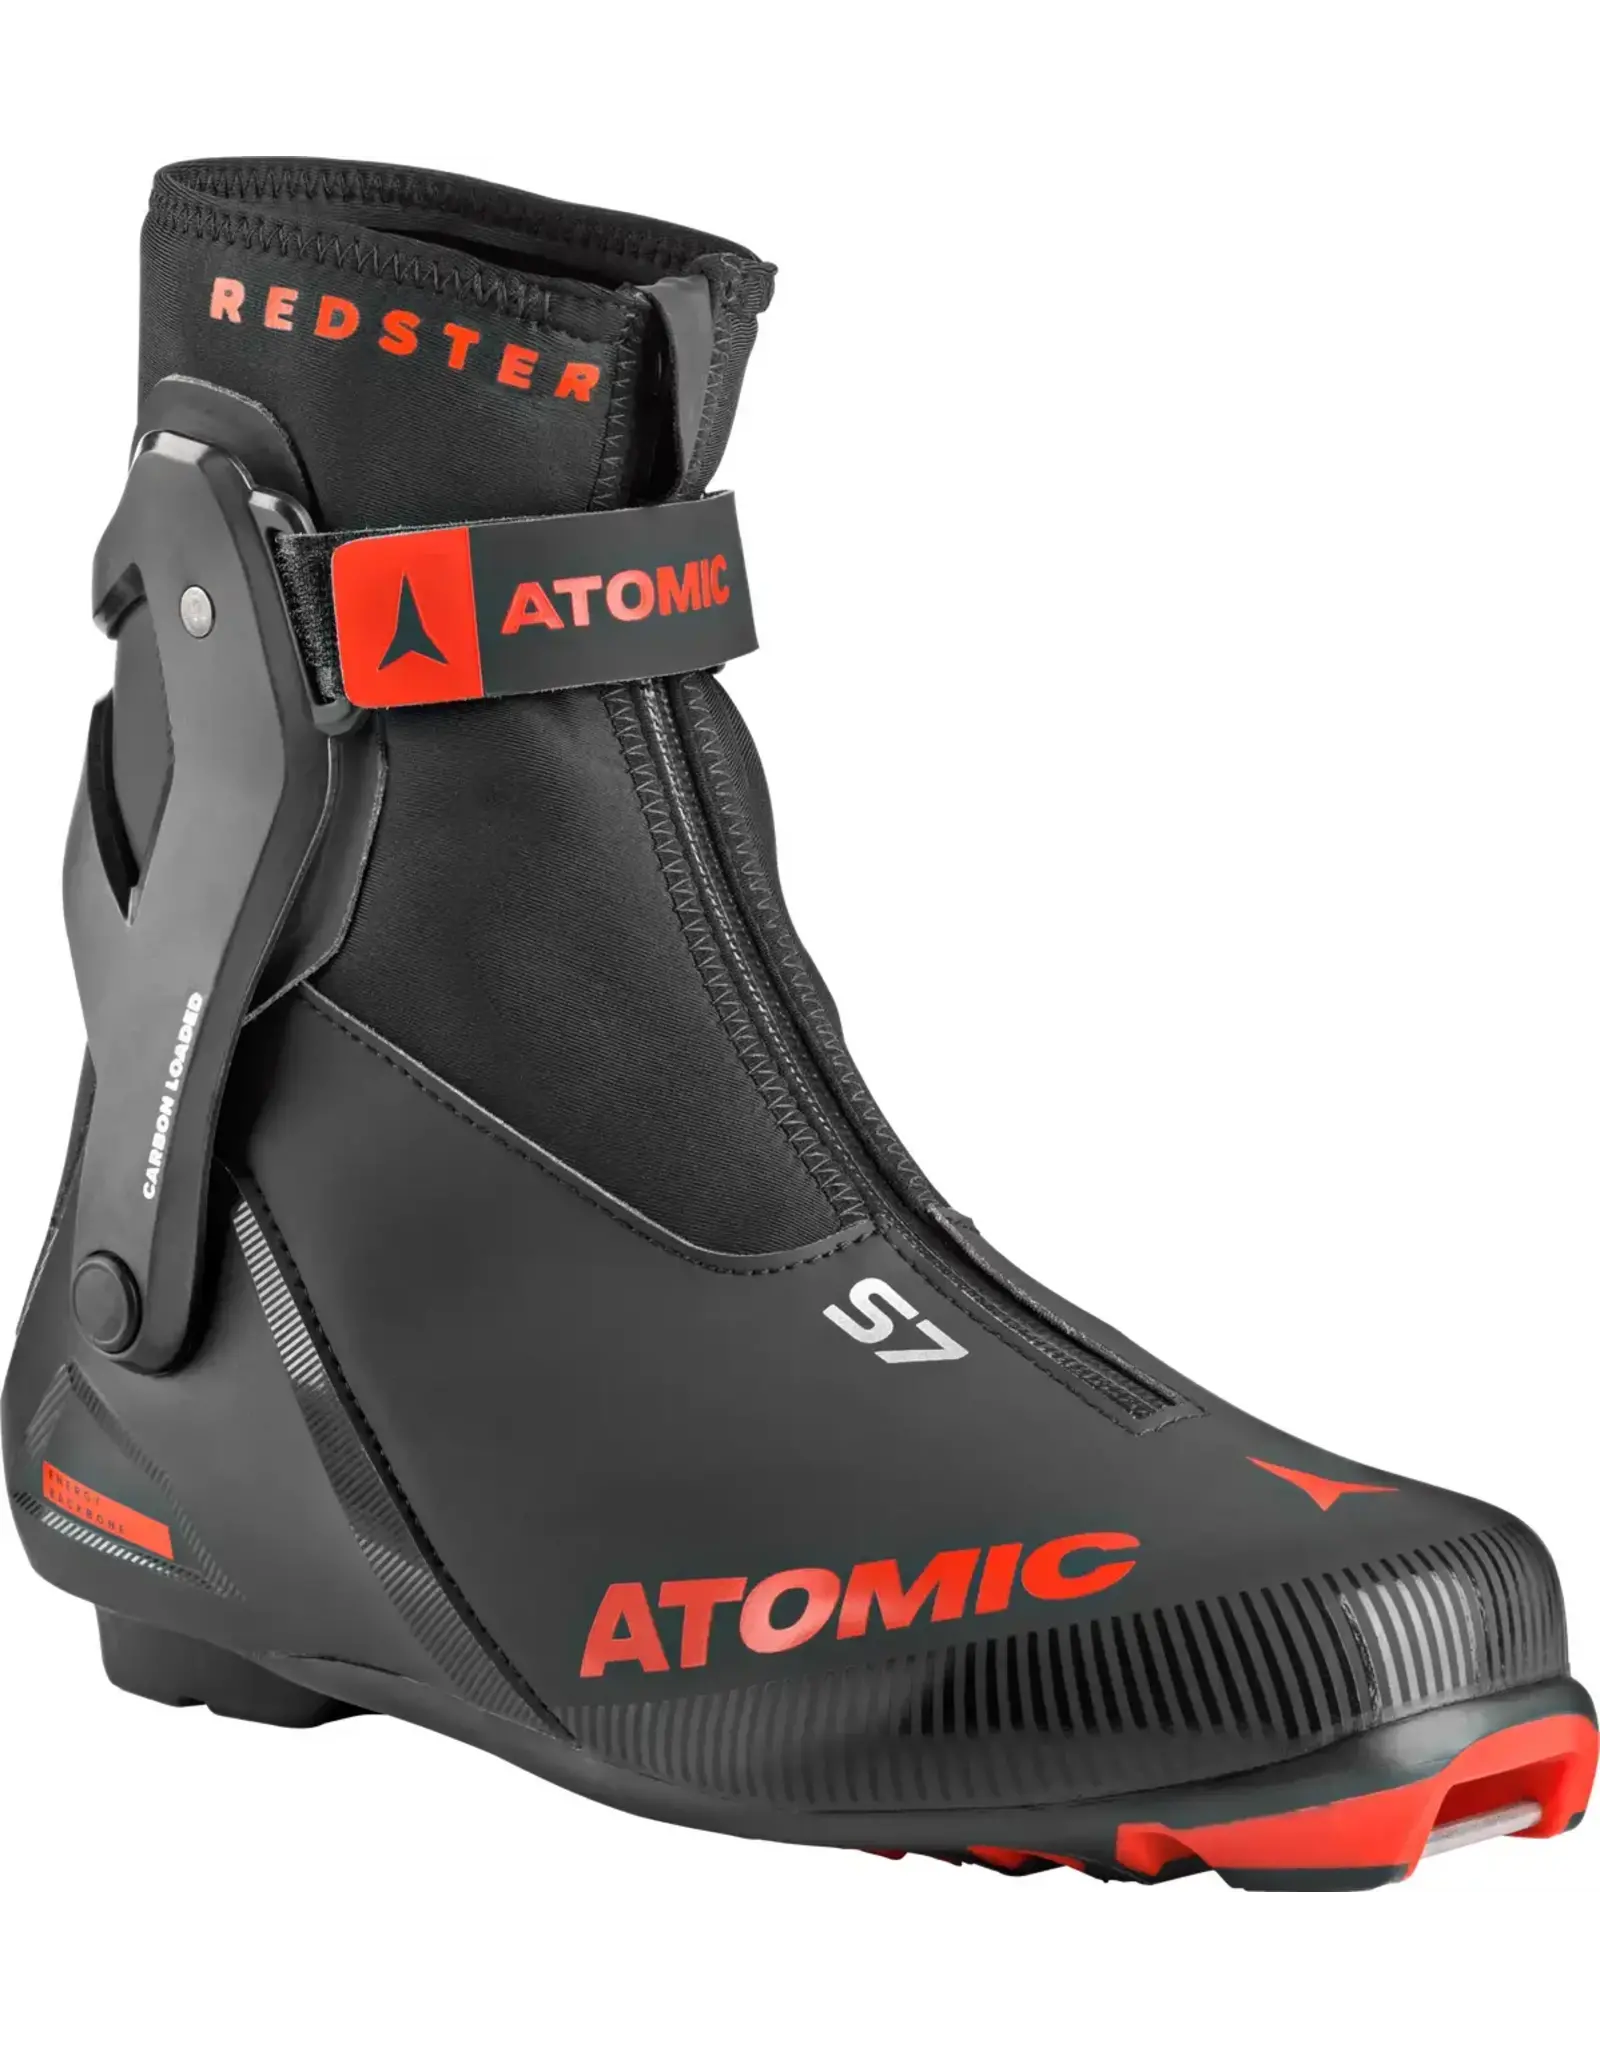 Atomic Atomic Redster S7 Skate Boot